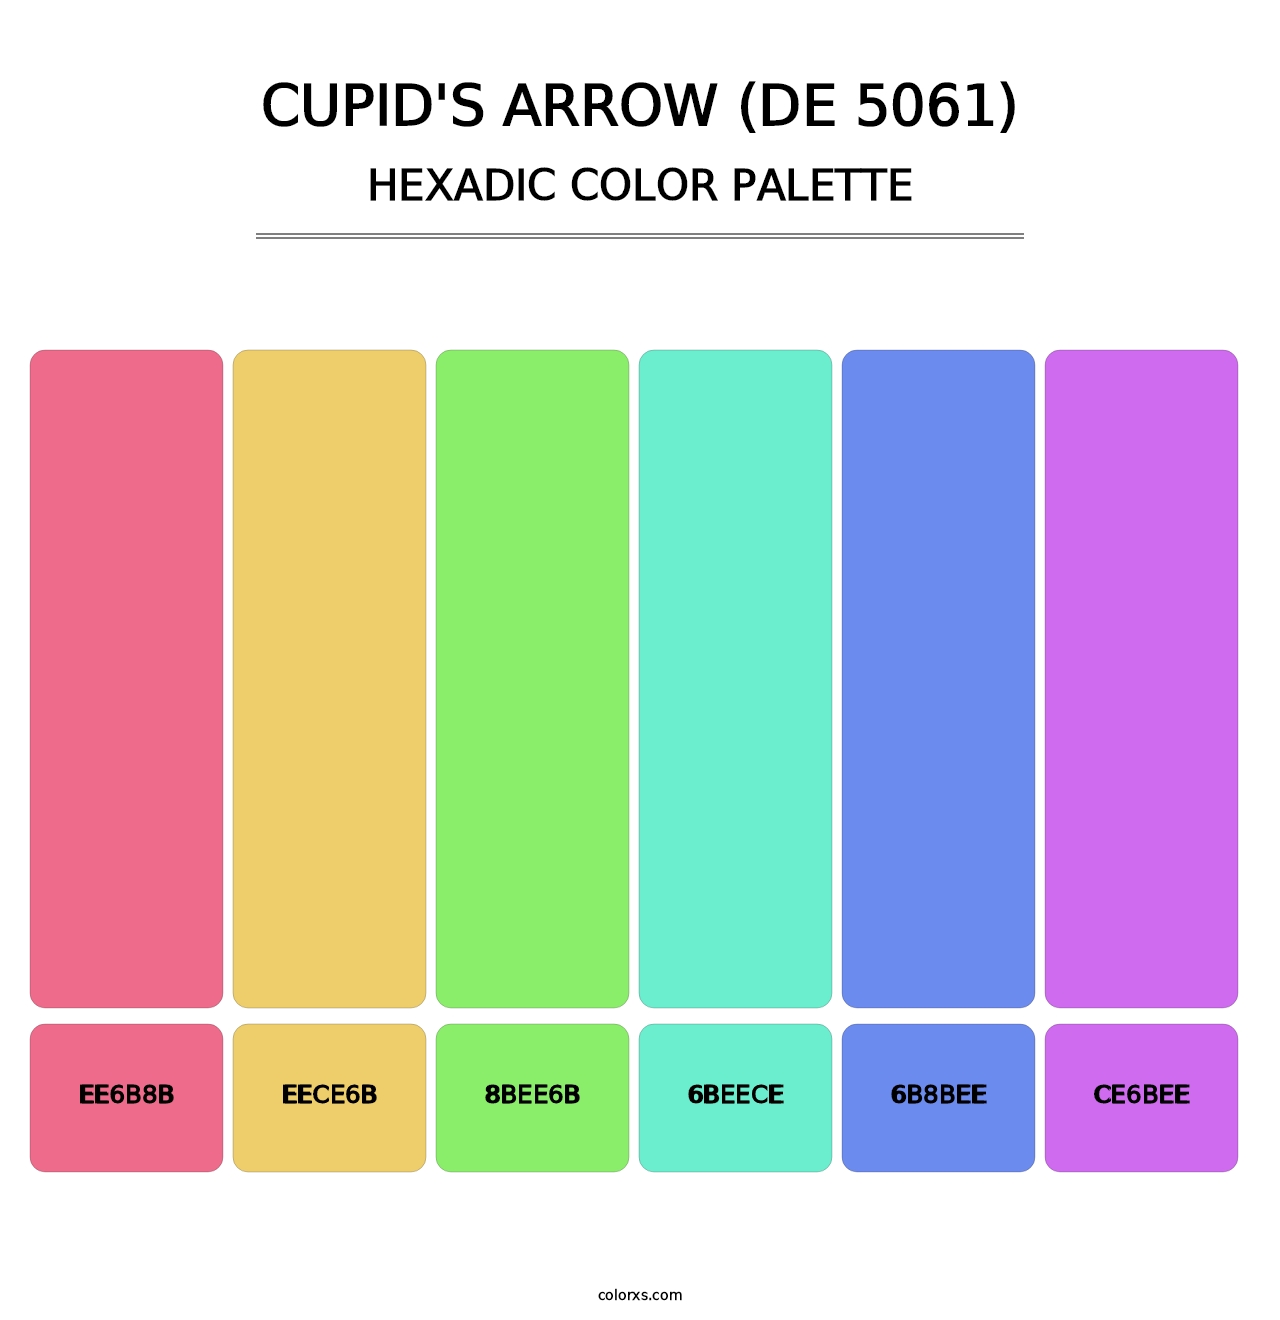 Cupid's Arrow (DE 5061) - Hexadic Color Palette